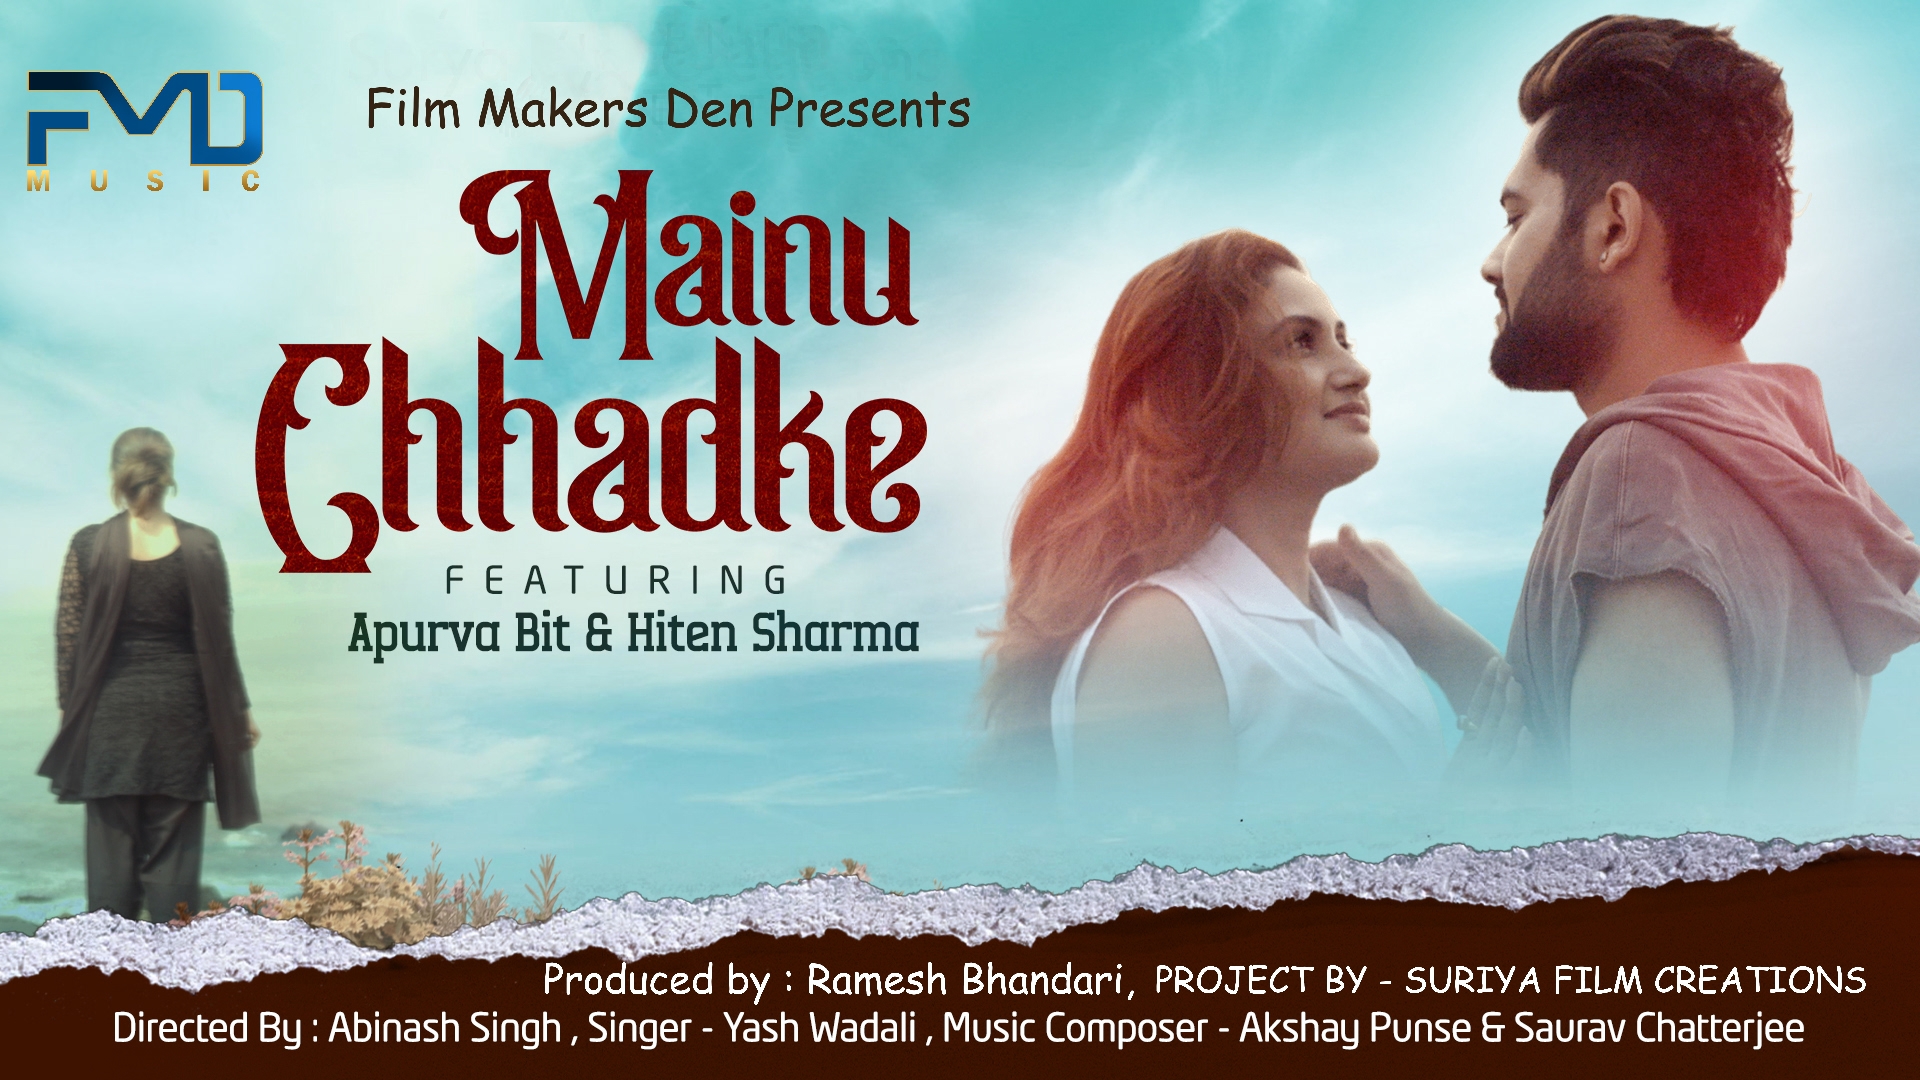 Mainu Chhadke Song: अपूर्वा बिट की मैनू छड़के का ऑडियो हुआ रिलीज एफएमडी म्यूजिक पर…